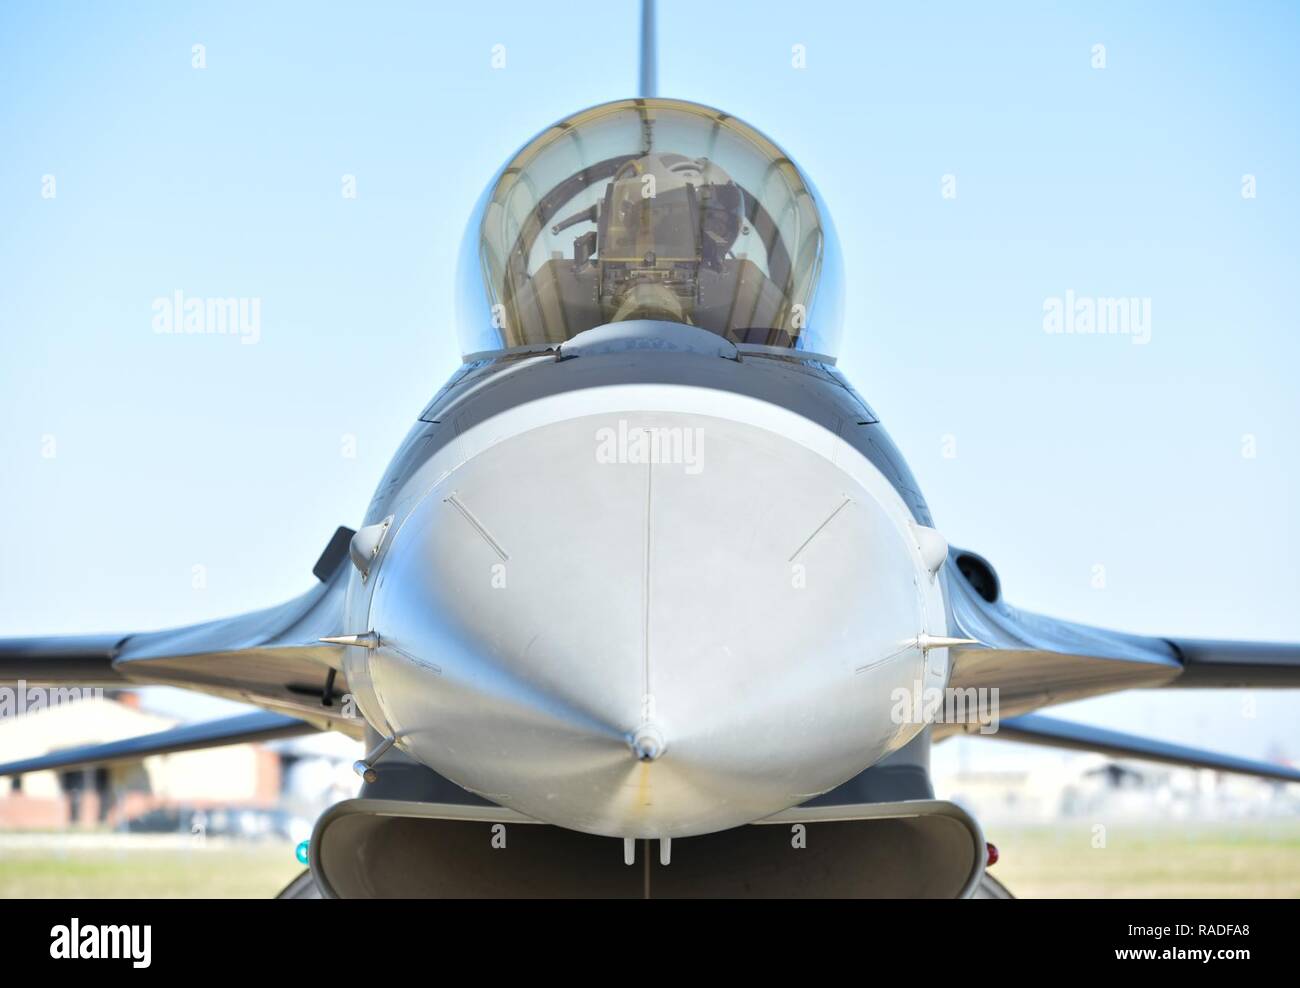 Uno studente pilota assegnato alla 149Fighter Wing controlla i comandi di un F-16 Fighting Falcon nel corso di una ispezione pre-volo a base comune San Antonio-Lackland, Texas, 1 febbraio 2017. La 149FW primaria della missione federale è di addestrare i piloti a operare e volare la F-16. Foto Stock